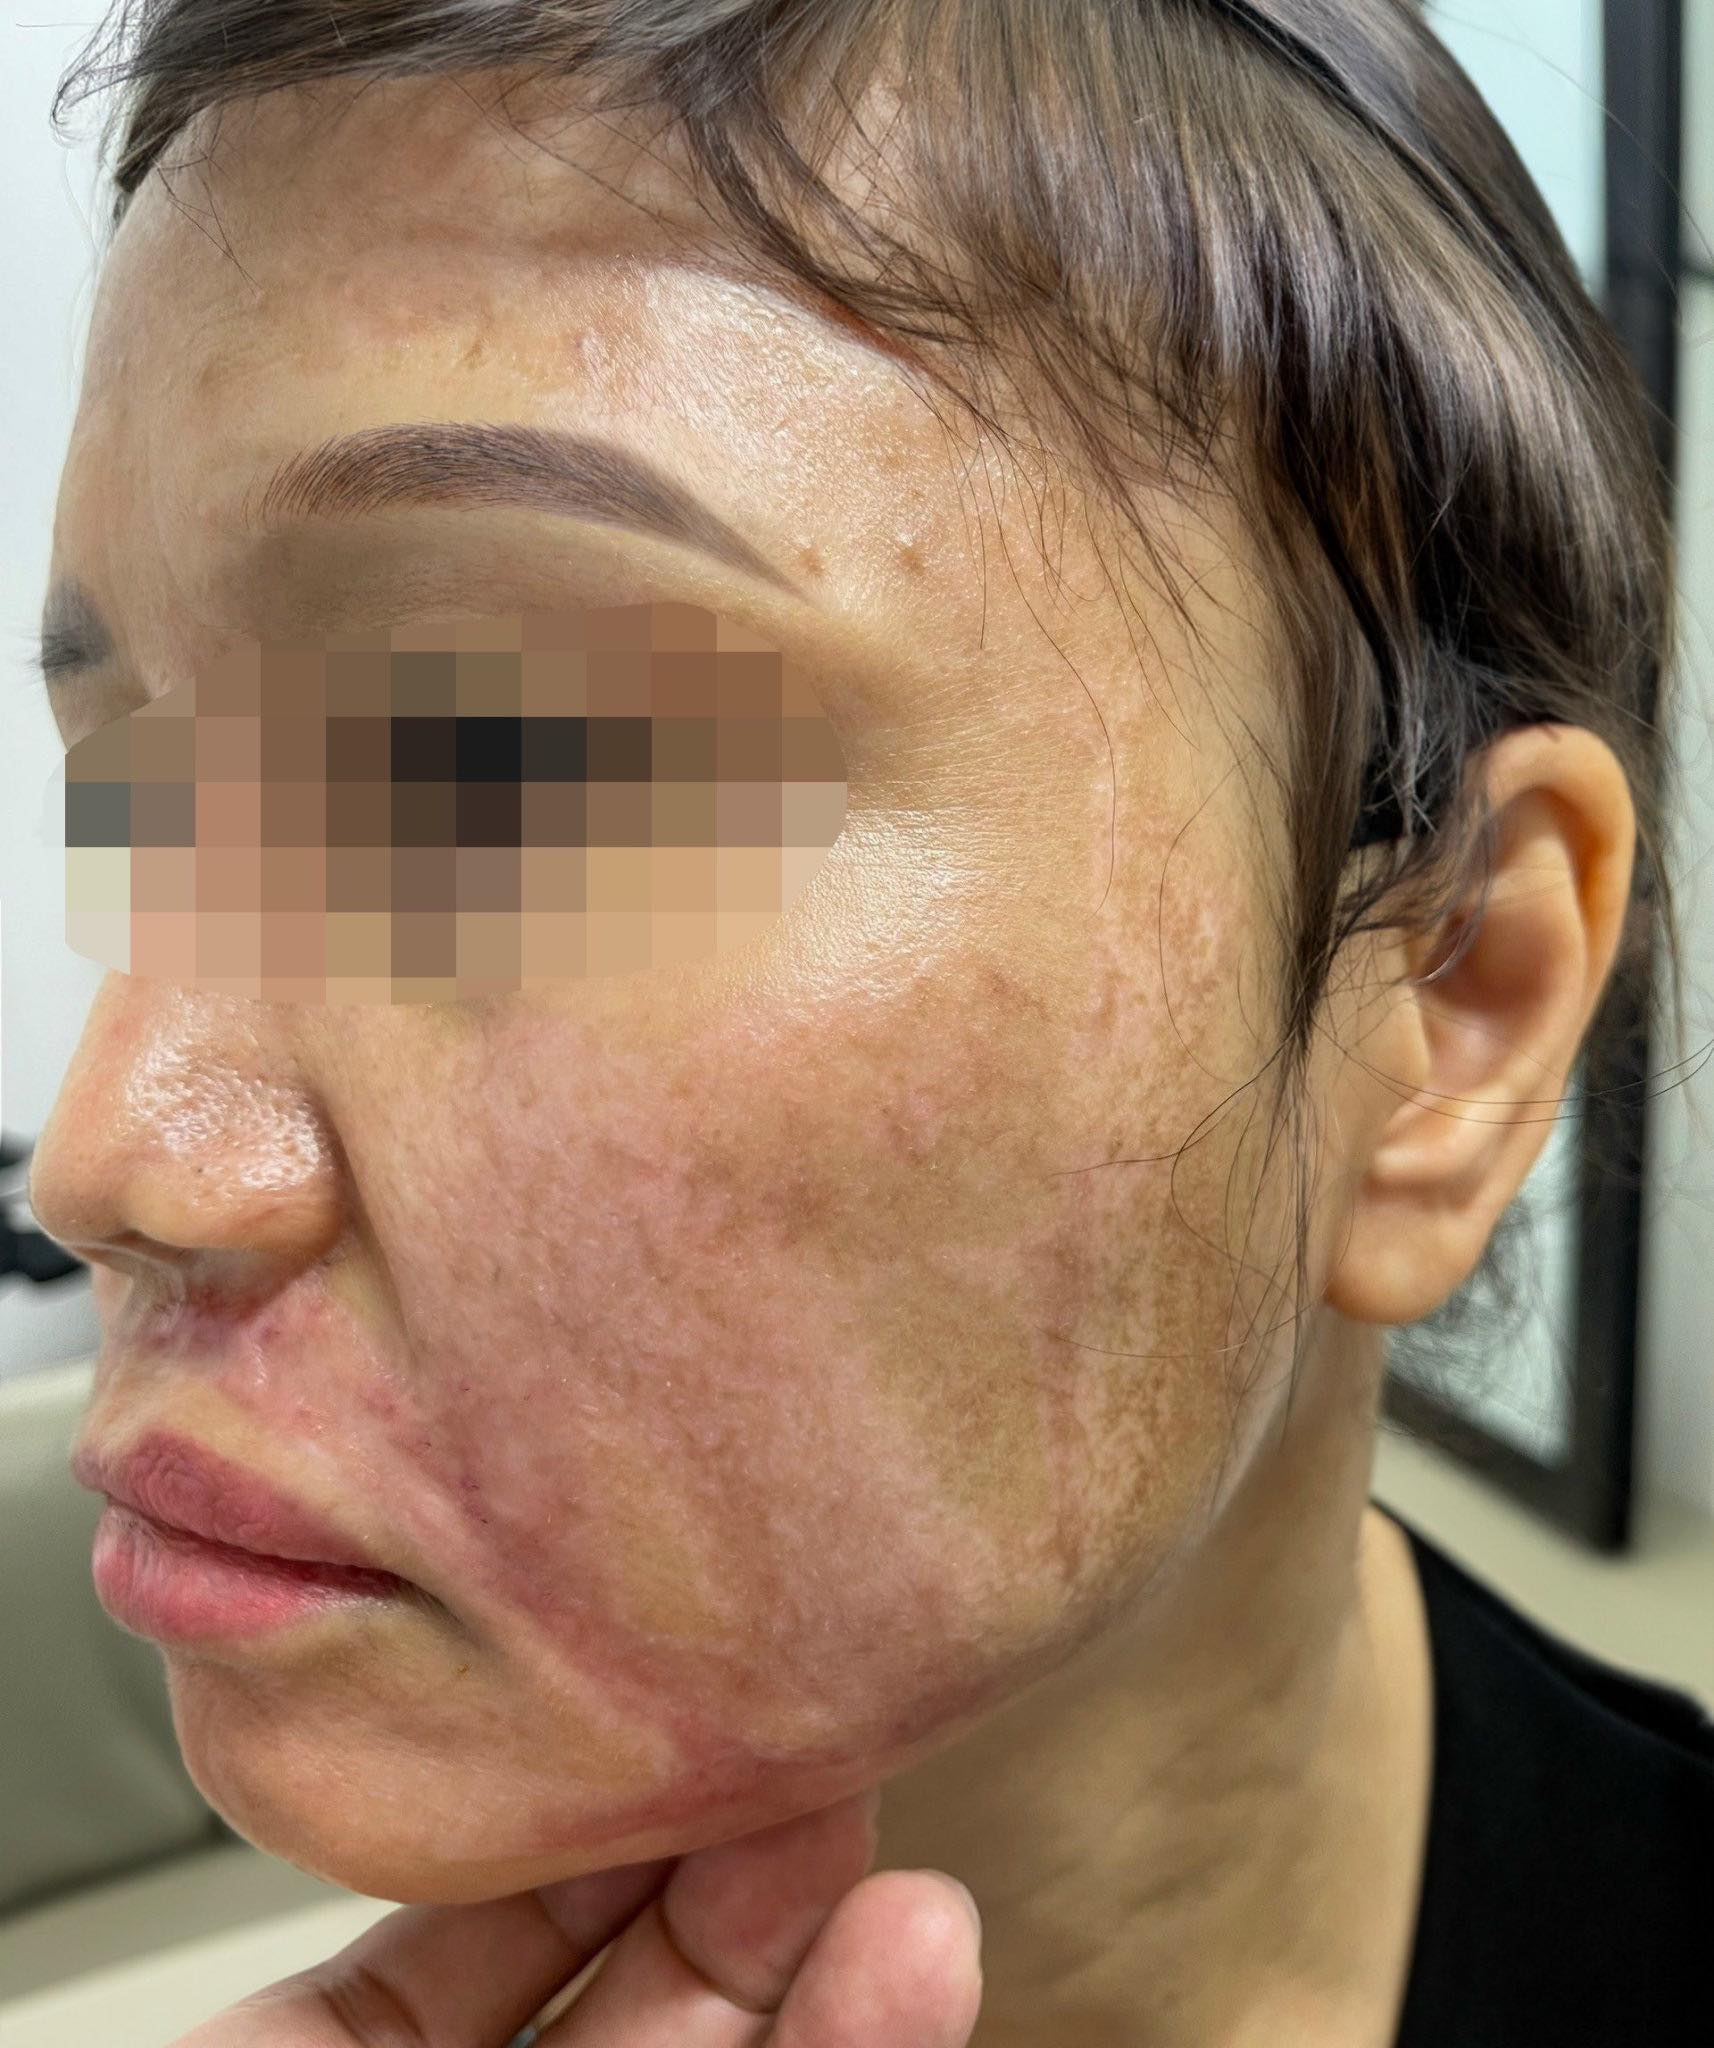 Lột da mặt bằng hoá chất để trị nám ở spa, người phụ nữ bị bỏng nặng gây biến chứng sẹo xấu trên mặt - Ảnh 1.